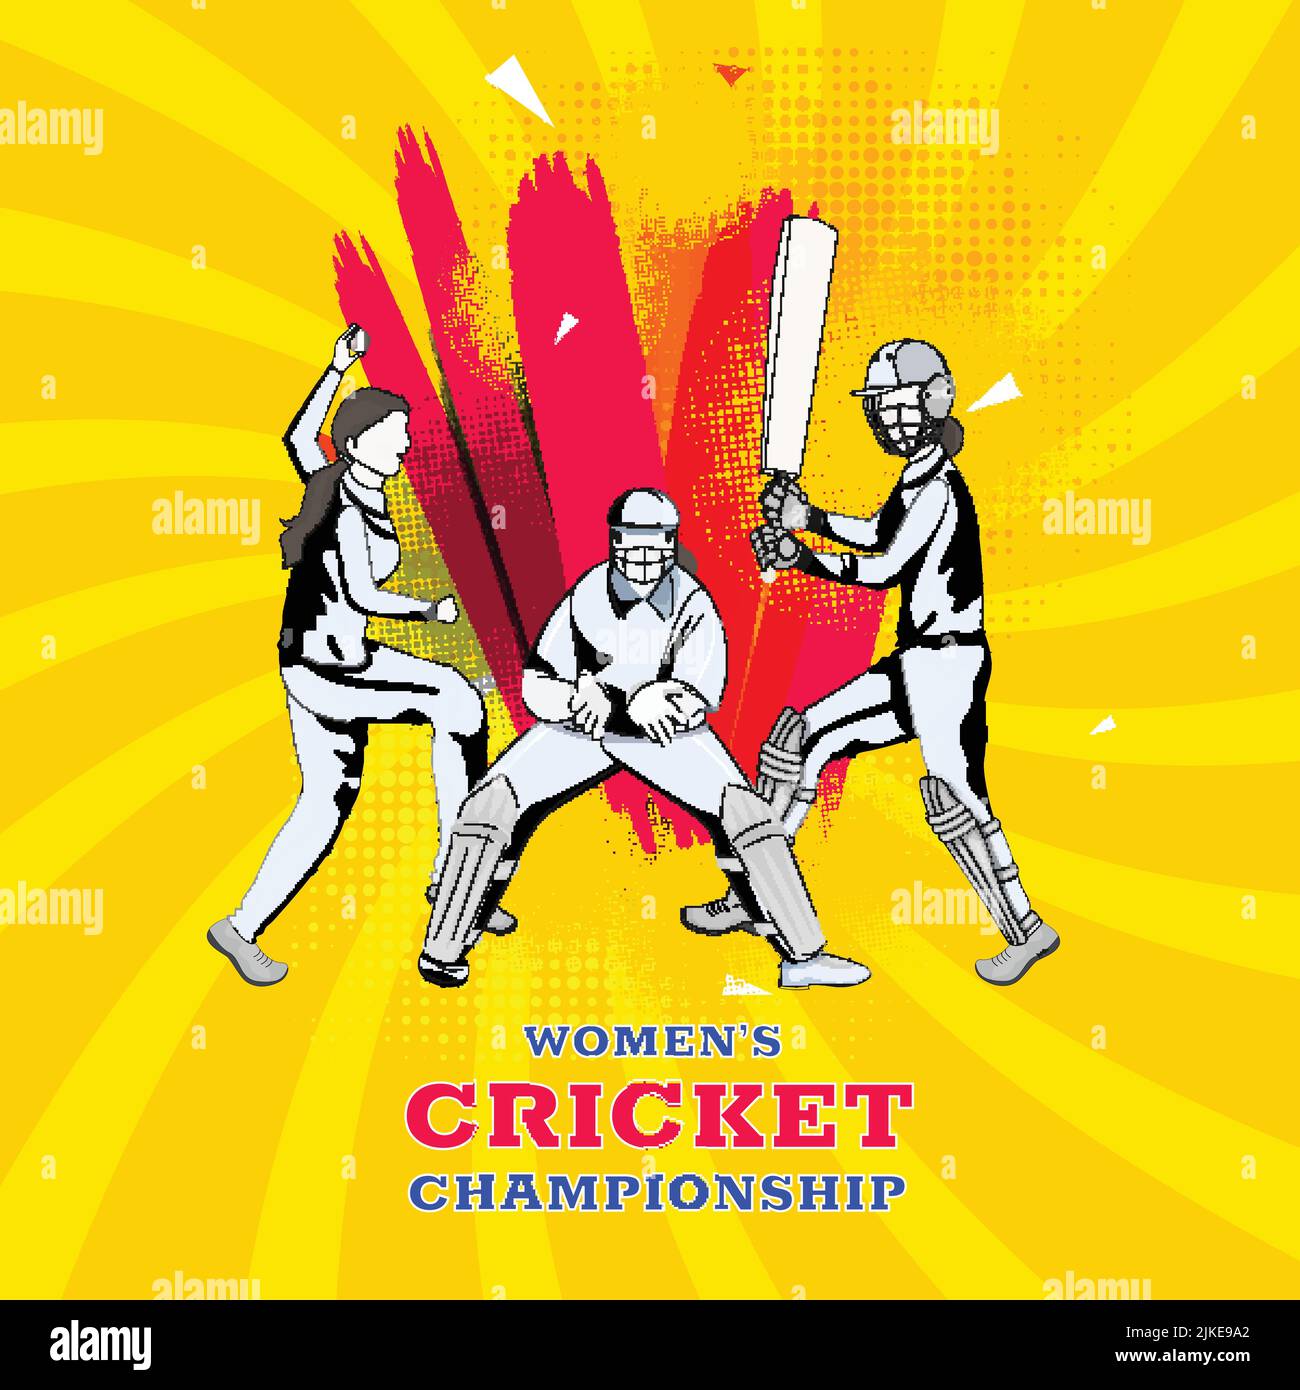 Donne giocatori di cricket in diverse pose e effetto spazzola rossa su Chrome Yellow Swirl Rays effetto mezzitoni sfondo per il concetto di campionato. Illustrazione Vettoriale